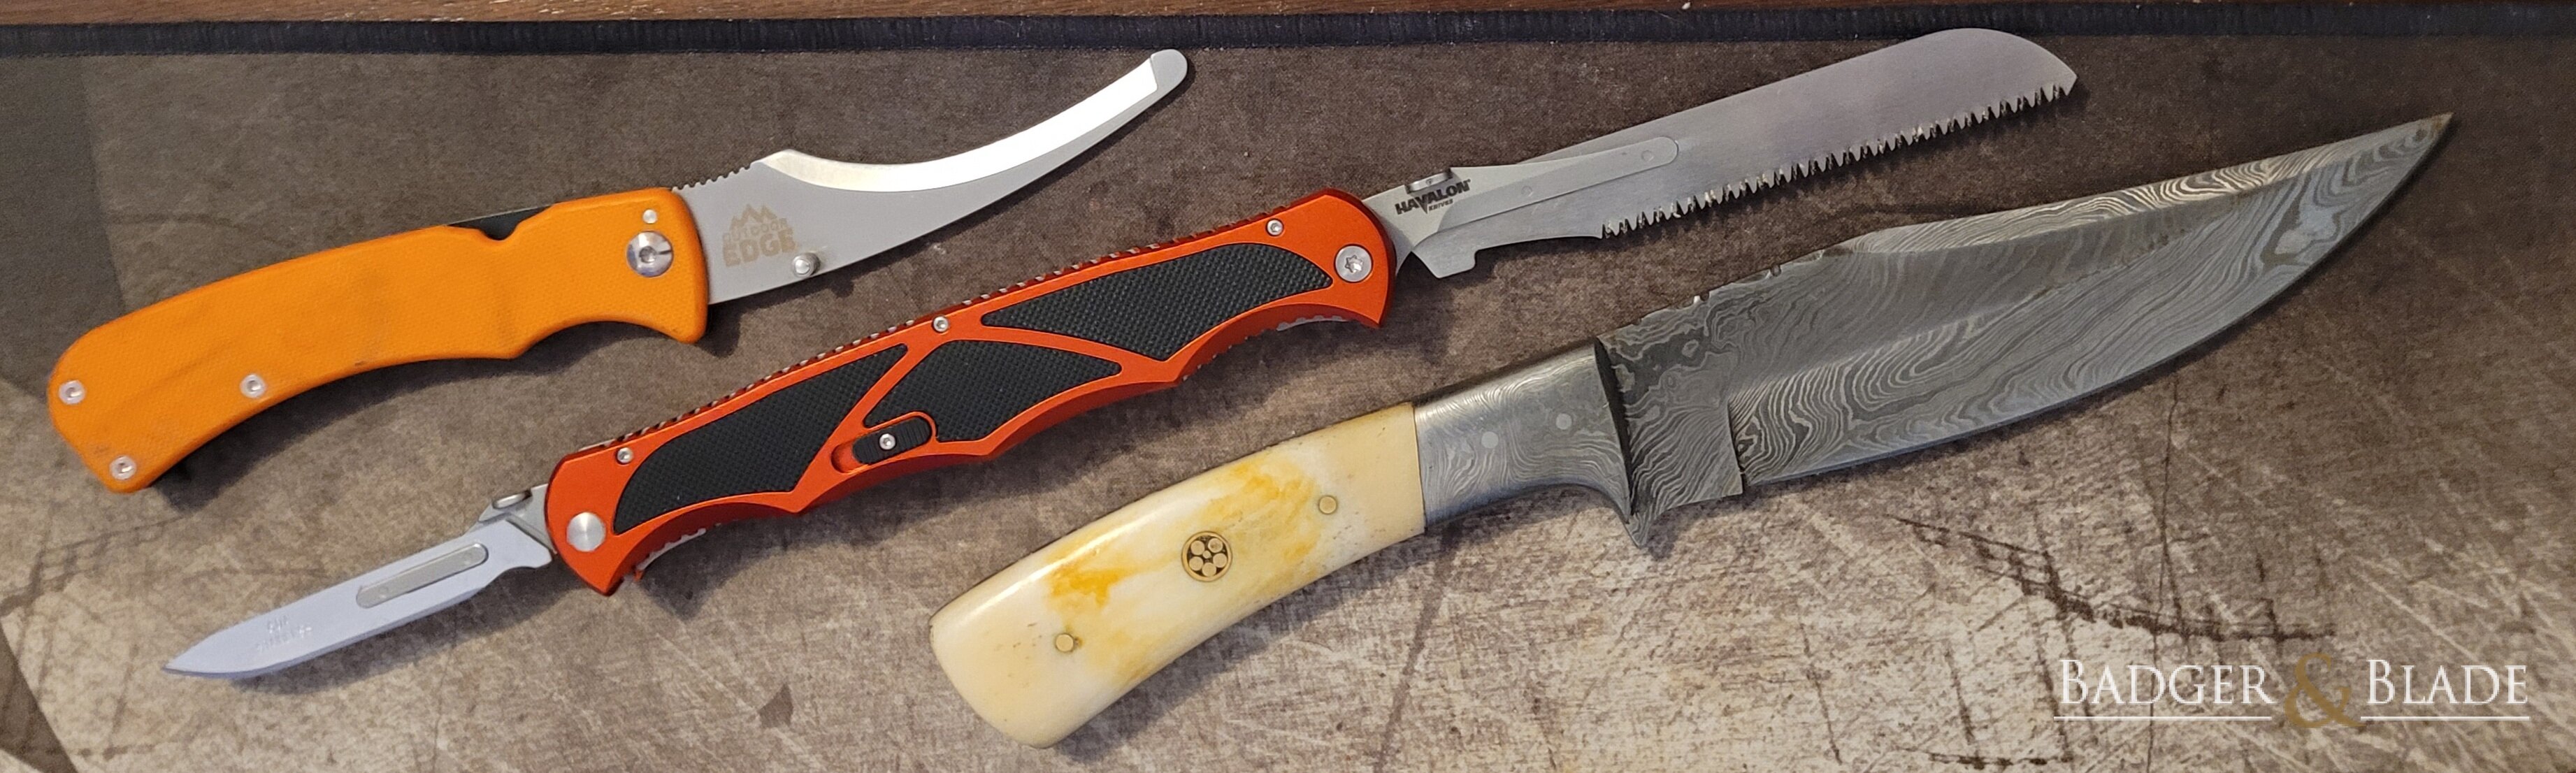 Hunting knives